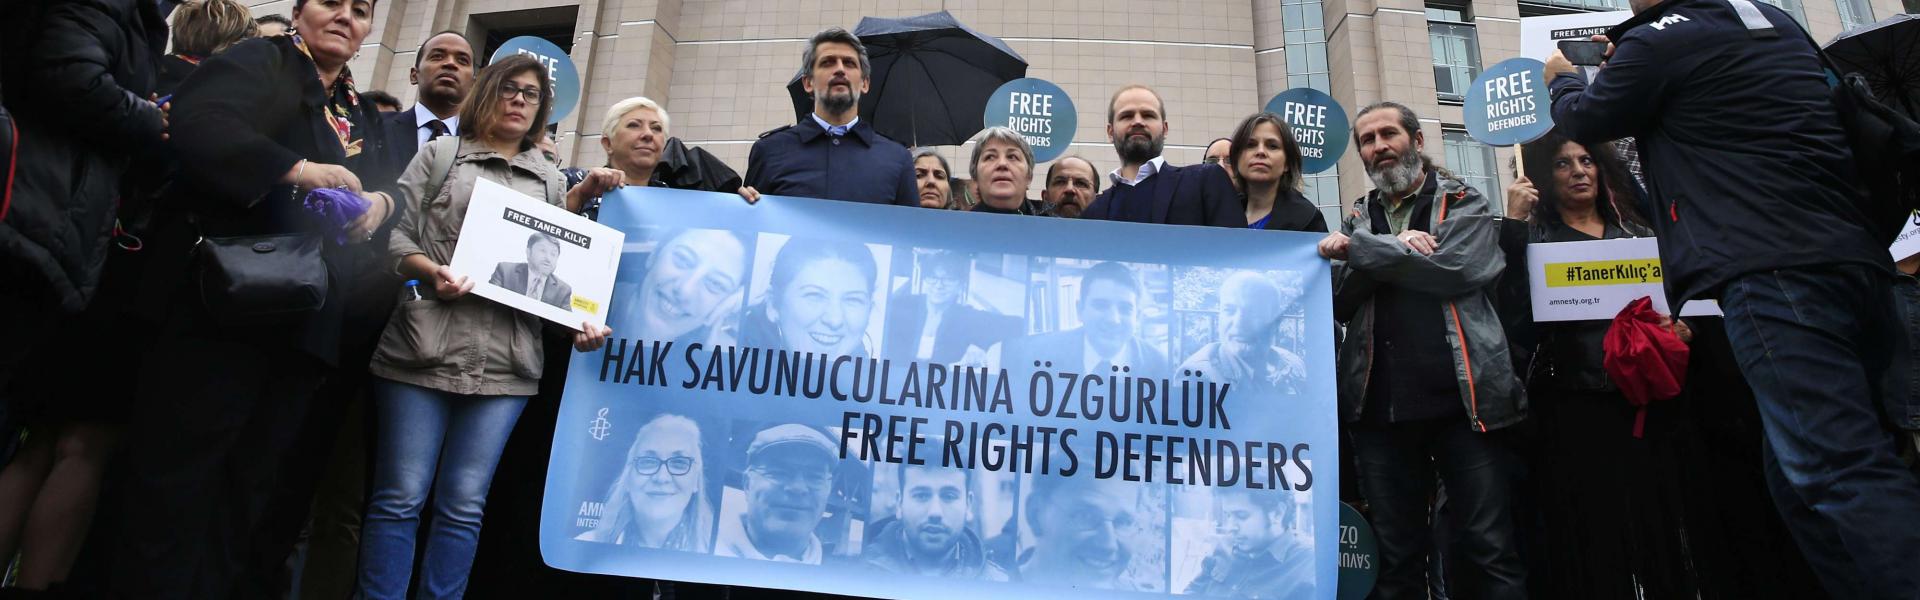 احتجاجات دولية ضد حملة الاعتقالات التركية